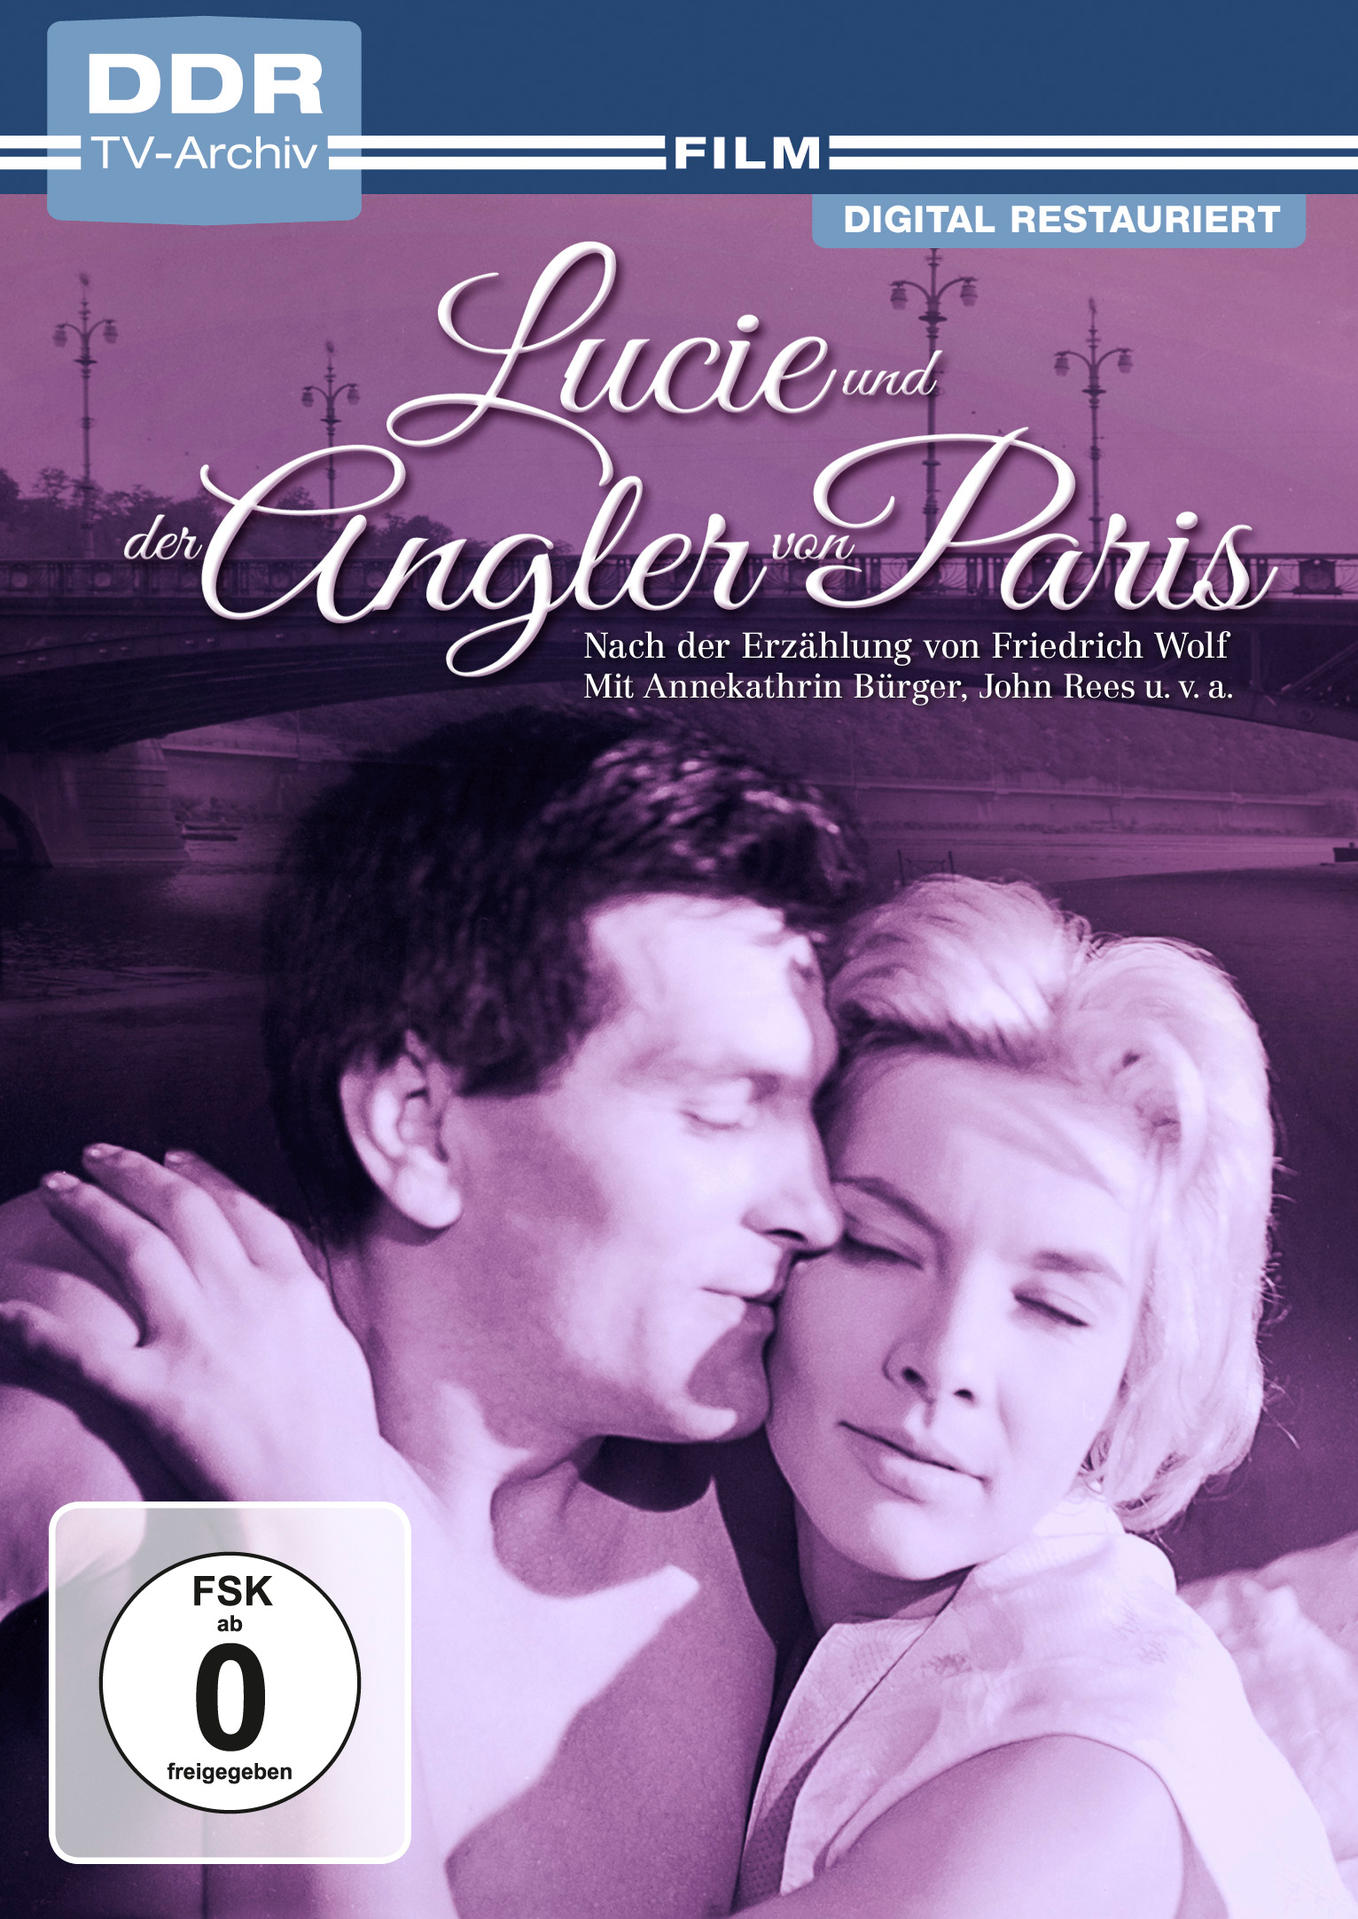 LUCIE DER VON ANGLER PARIS UND DVD